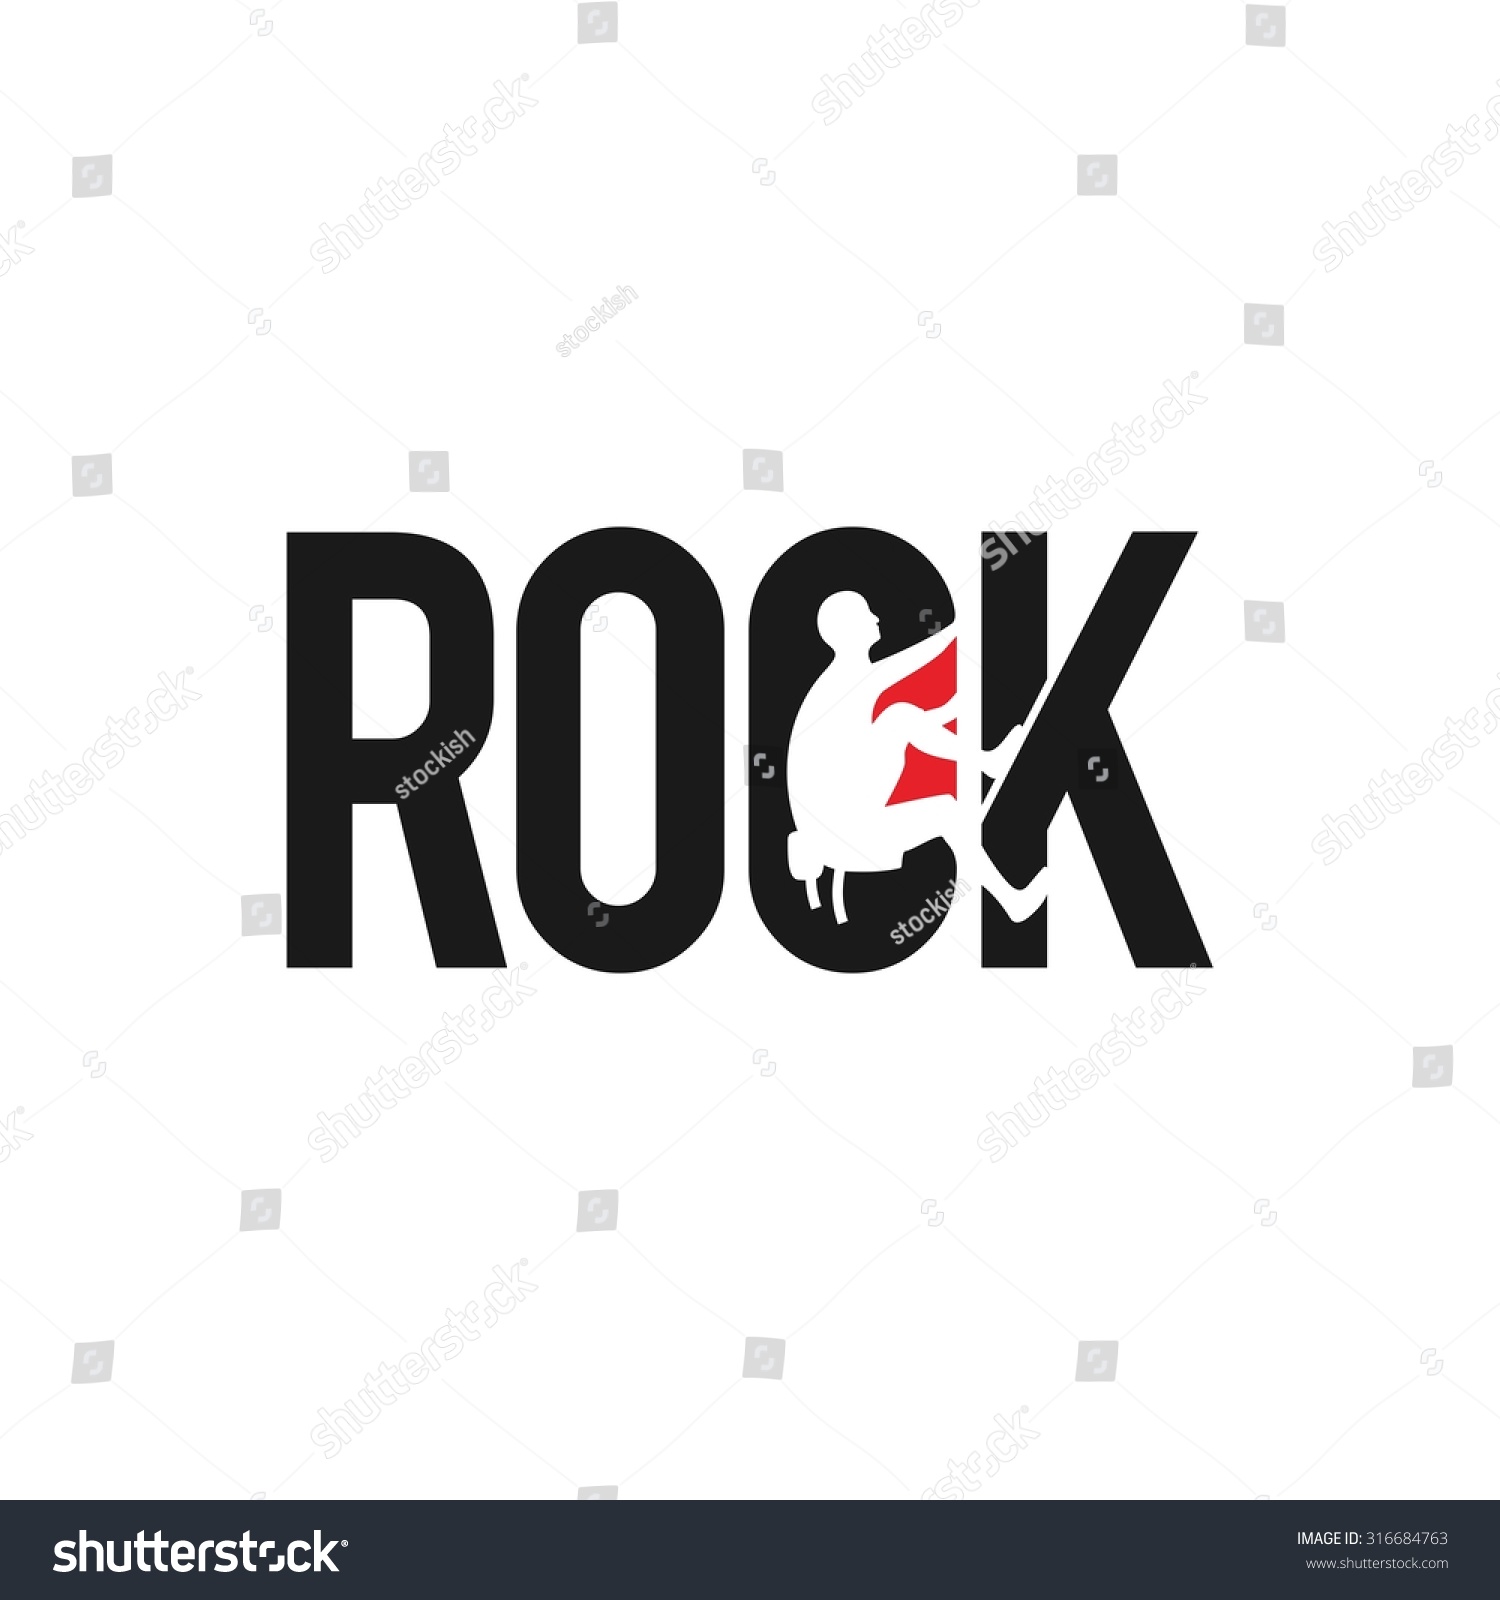 Rock Climbing Logo Vector Stock Vector 316684763 - Shutterstock